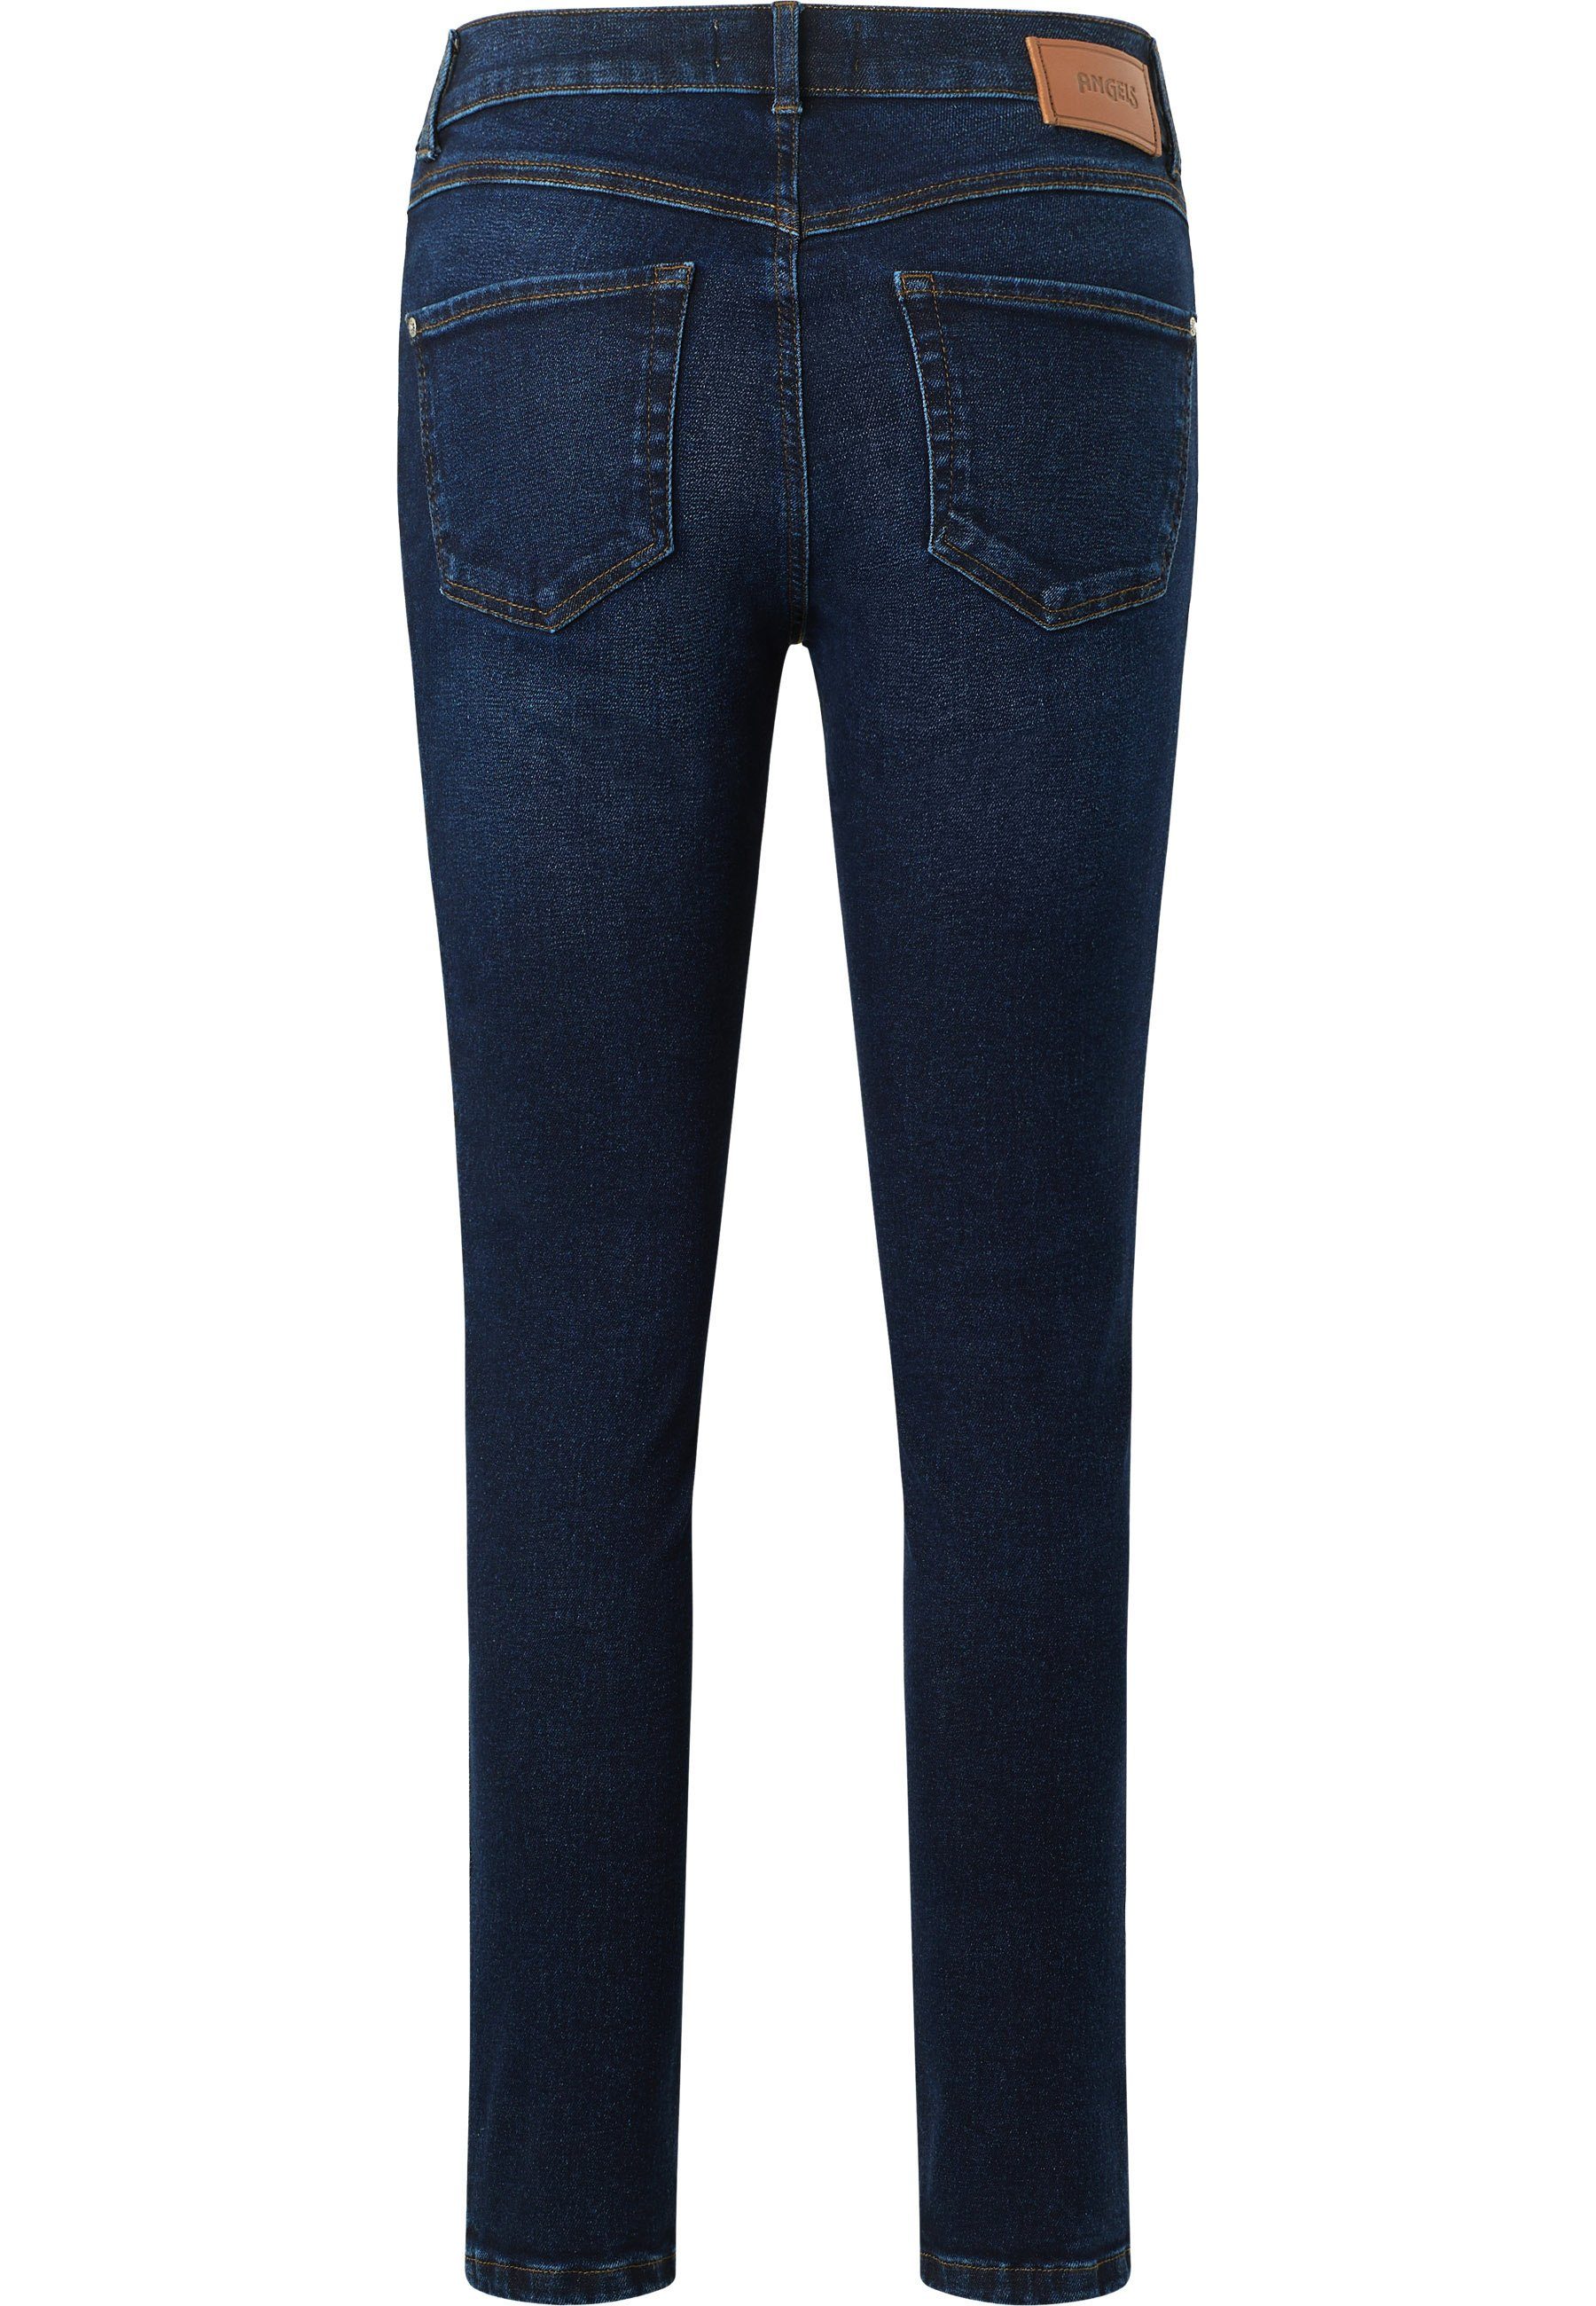 Seam Jeans mit Reißverschluss Slim-fit-Jeans Vintage dunkellila Ornella ANGELS